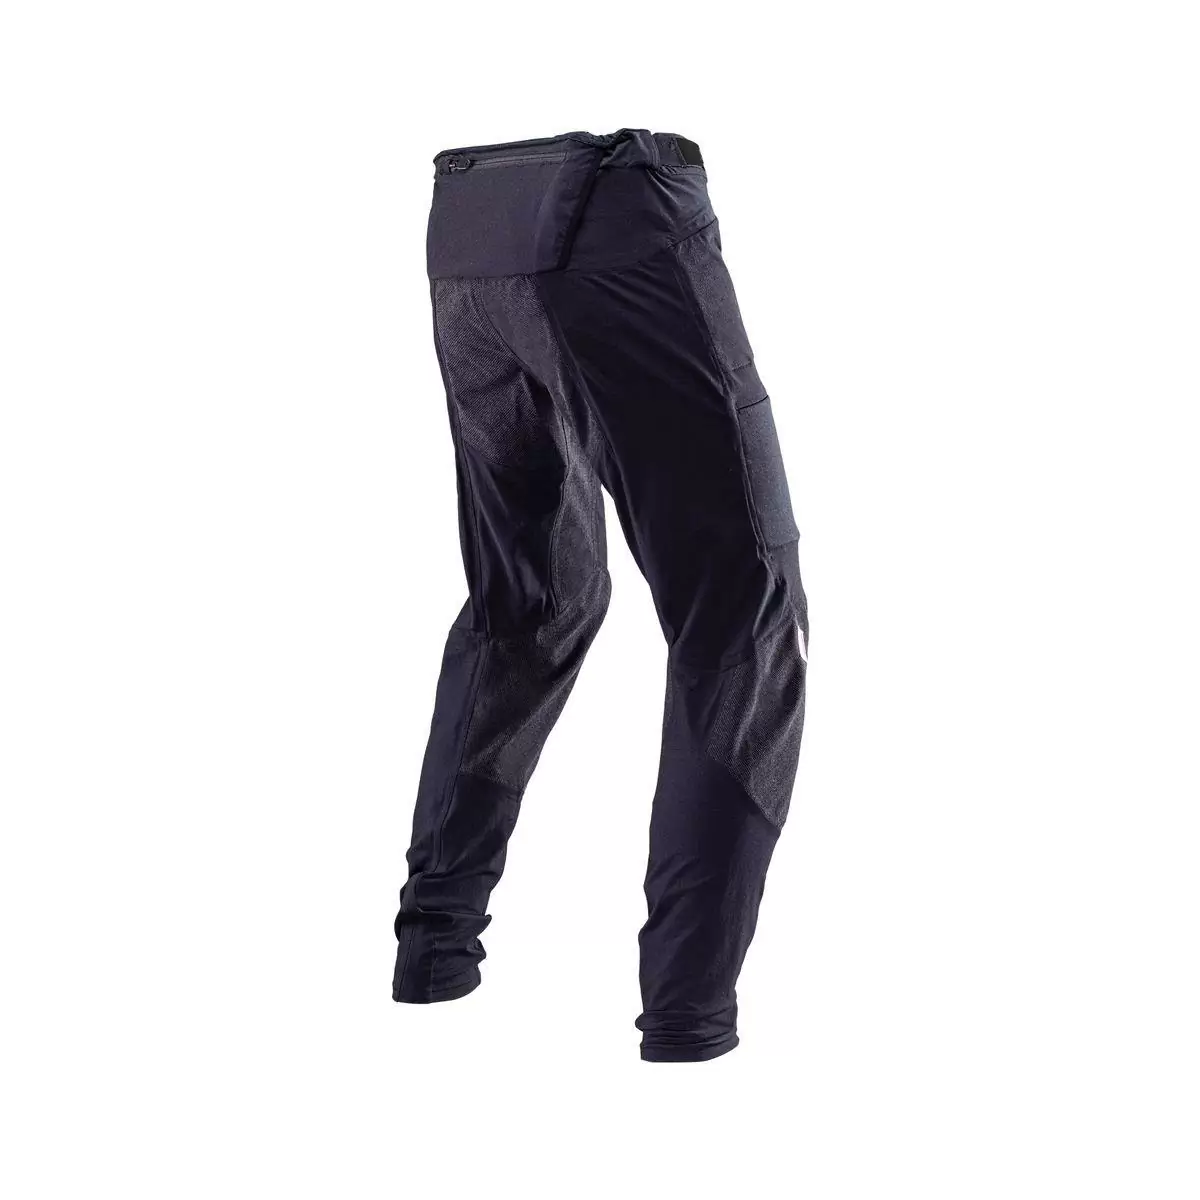 Pantalones MTB Allmtn 4.0 Largos Negro Talla XS #3